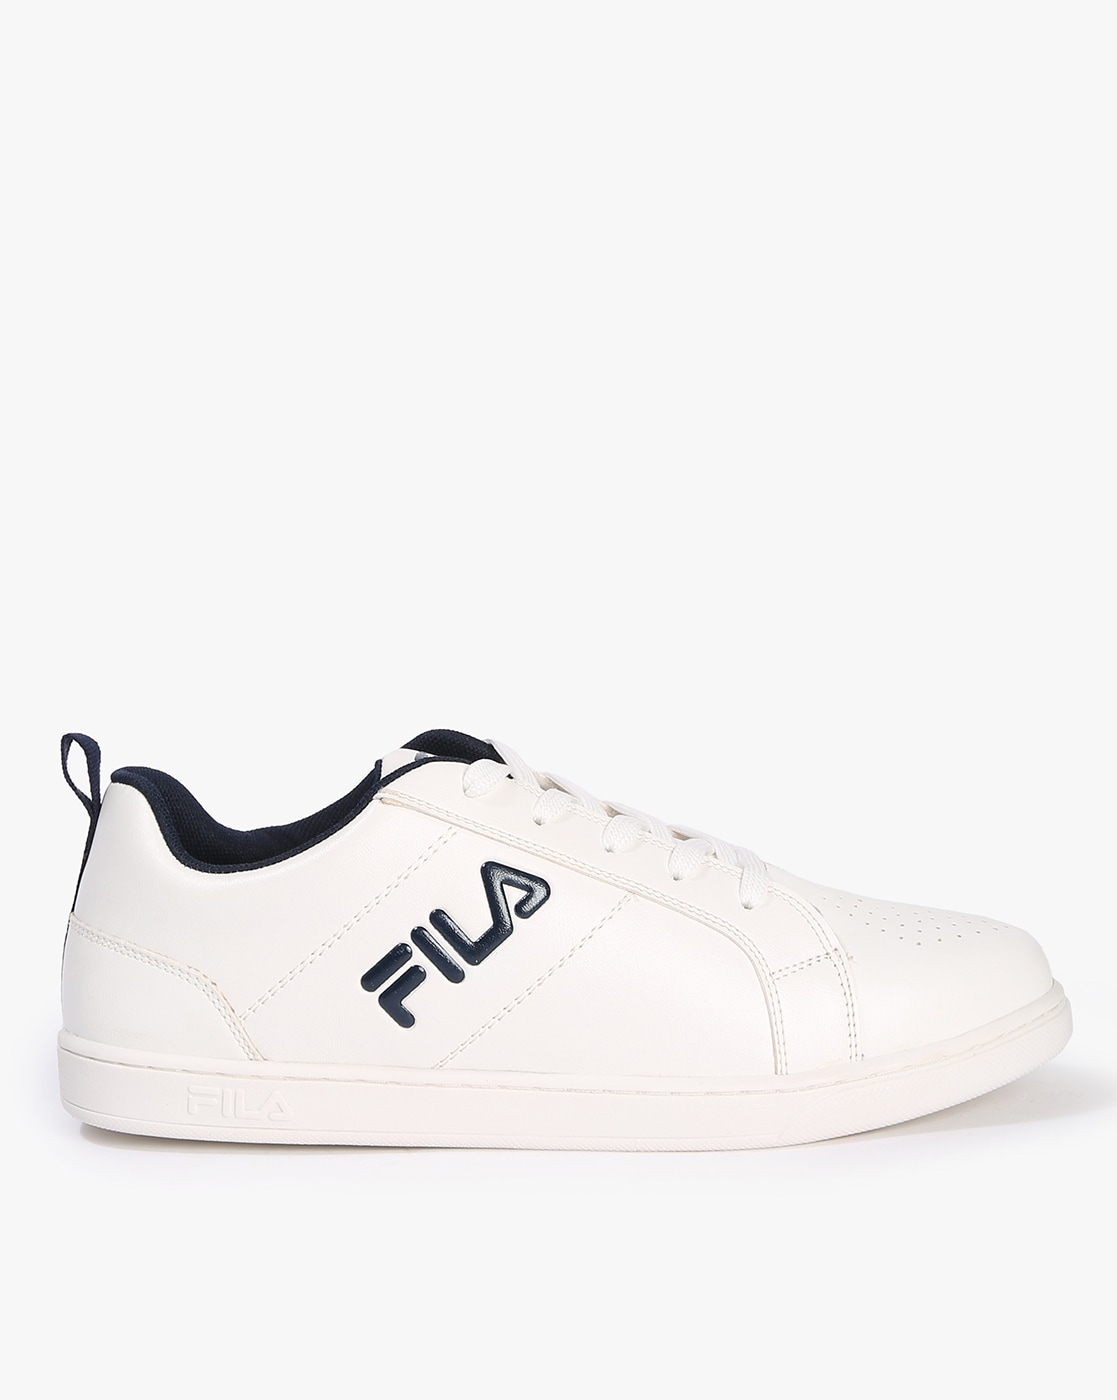 Fila Lavett Ii White Sneakers 1598312 Ht Ml - Buy Fila Lavett Ii White  Sneakers 1598312 Ht Ml online in India